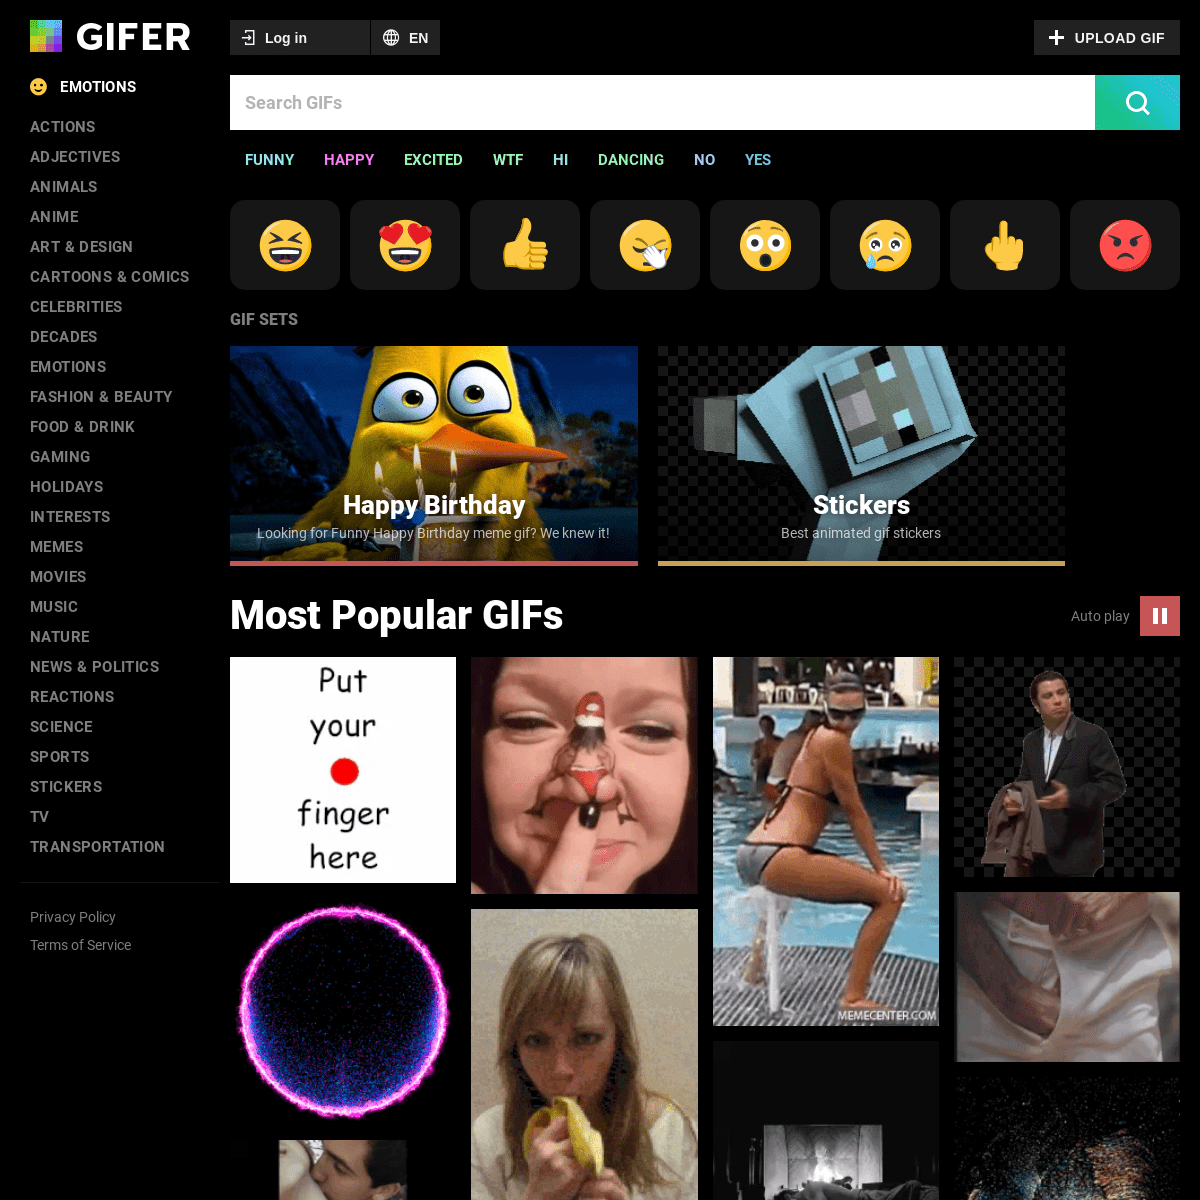 A complete backup of gifer.com